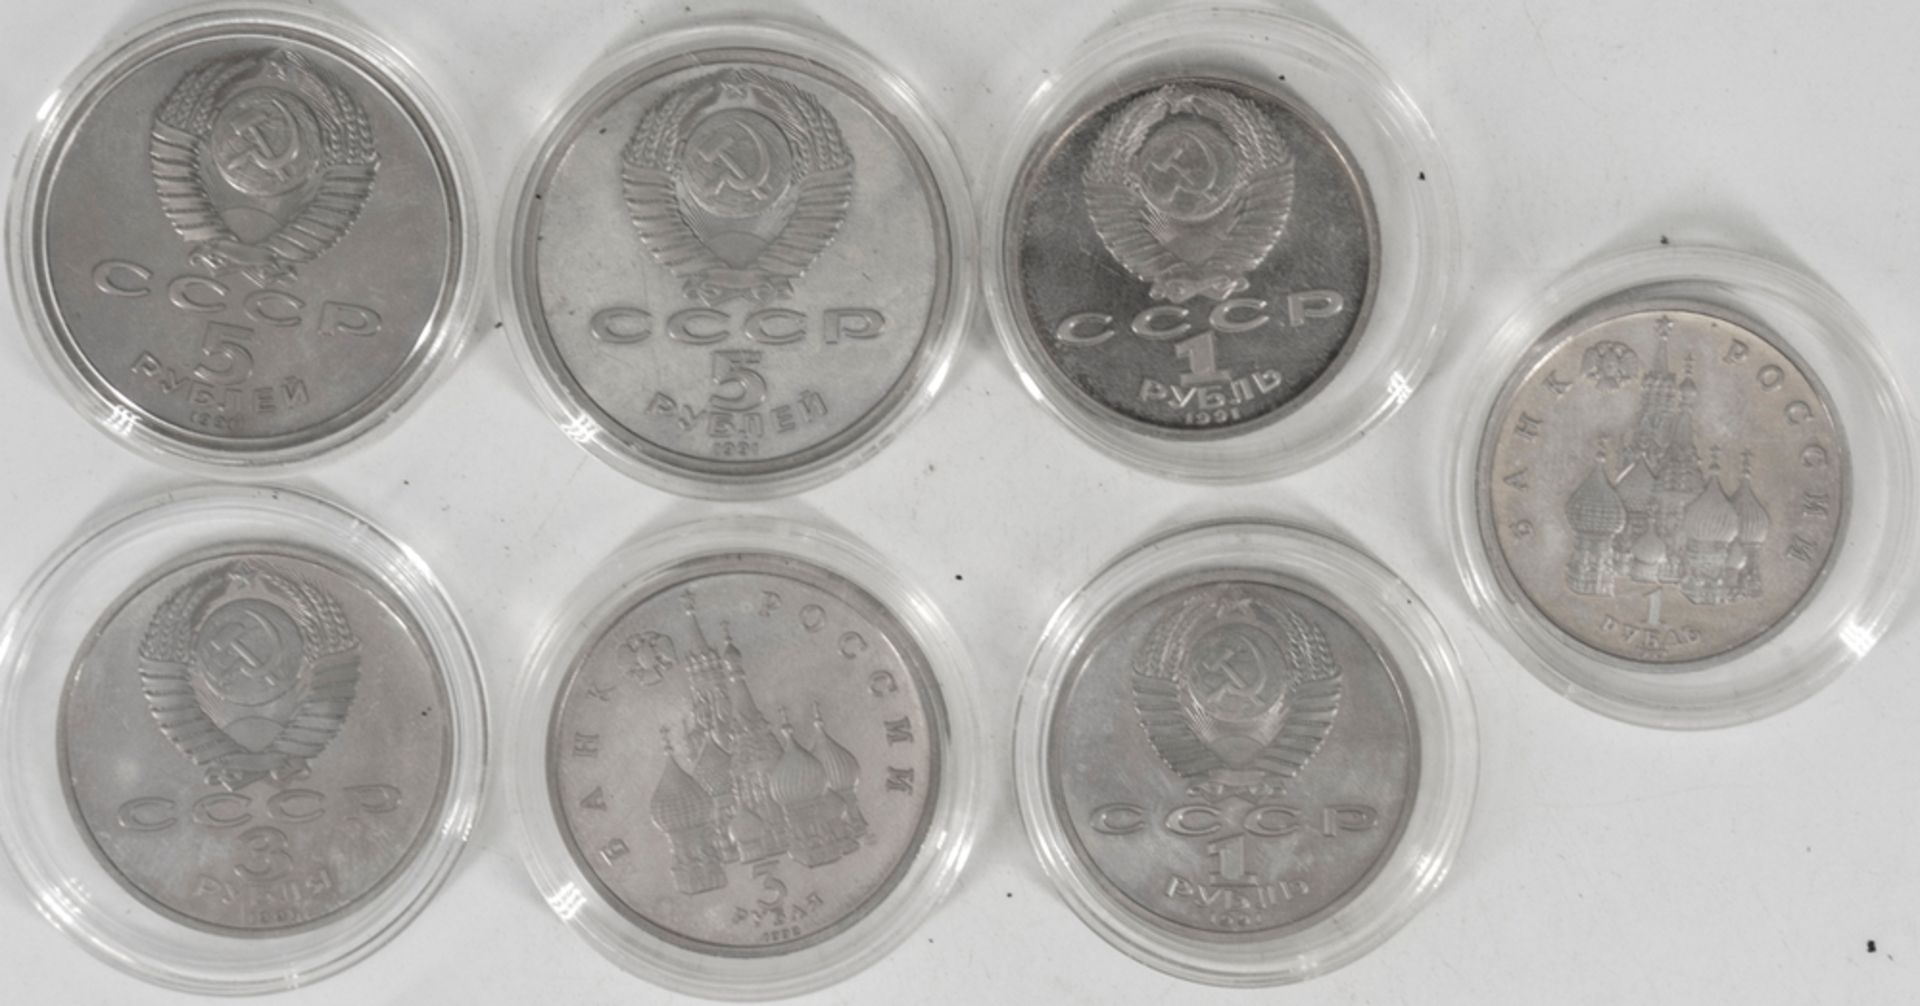 Russland 1991/92, Lot 1-, 3- und 5 Rubel - Münzen. Alle in Kapseln. Erhaltung: stgl. - Bild 2 aus 2